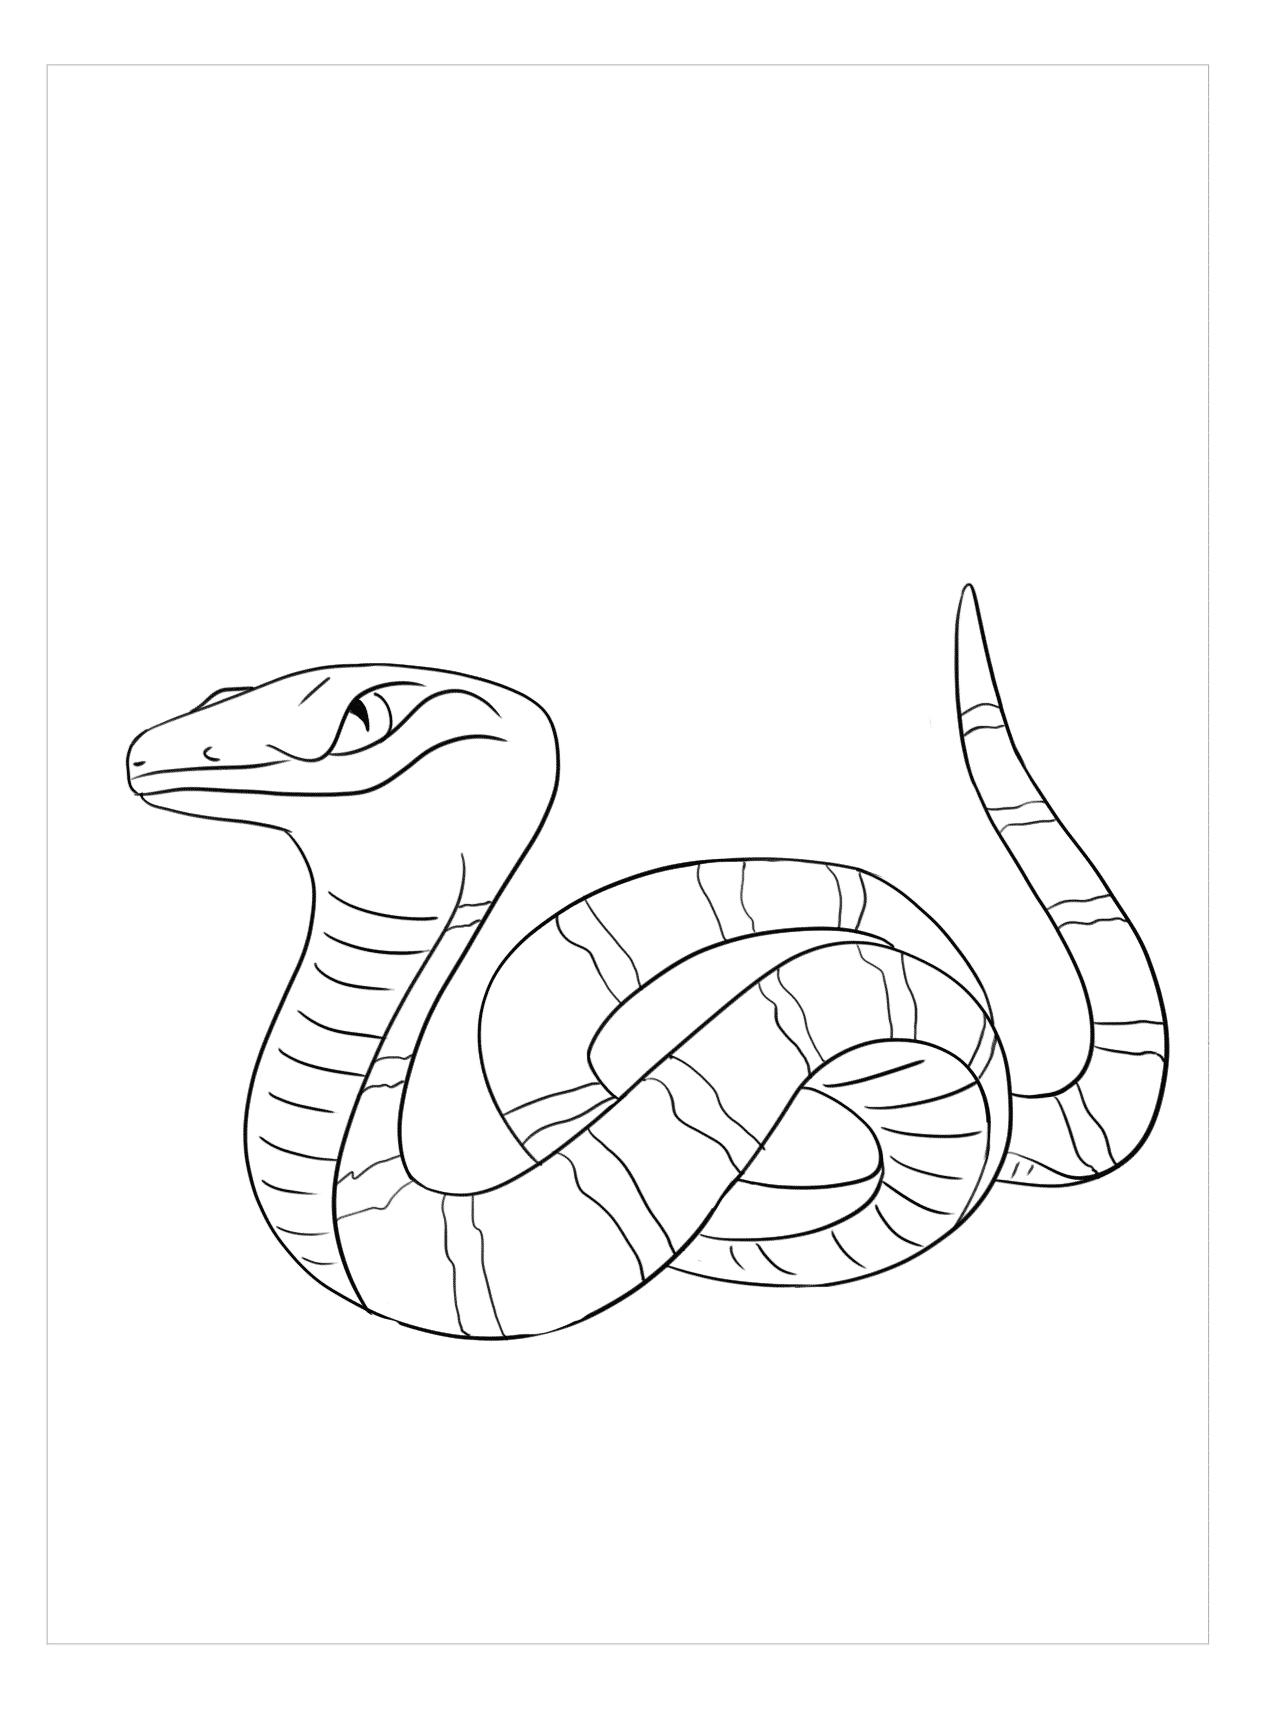 Bức hình vẽ con rắn đang chờ đón bạn. Để tạo ra một bức hình vẽ đẹp như vậy, bạn cần có sự kiên trì và tâm huyết. Hãy xem qua bức hình này và cảm nhận sự nổi bật của các đường nét, sự rõ nét trong họa tiết. Sau đó, bạn có thể bắt đầu tập vẽ rắn cho riêng mình.